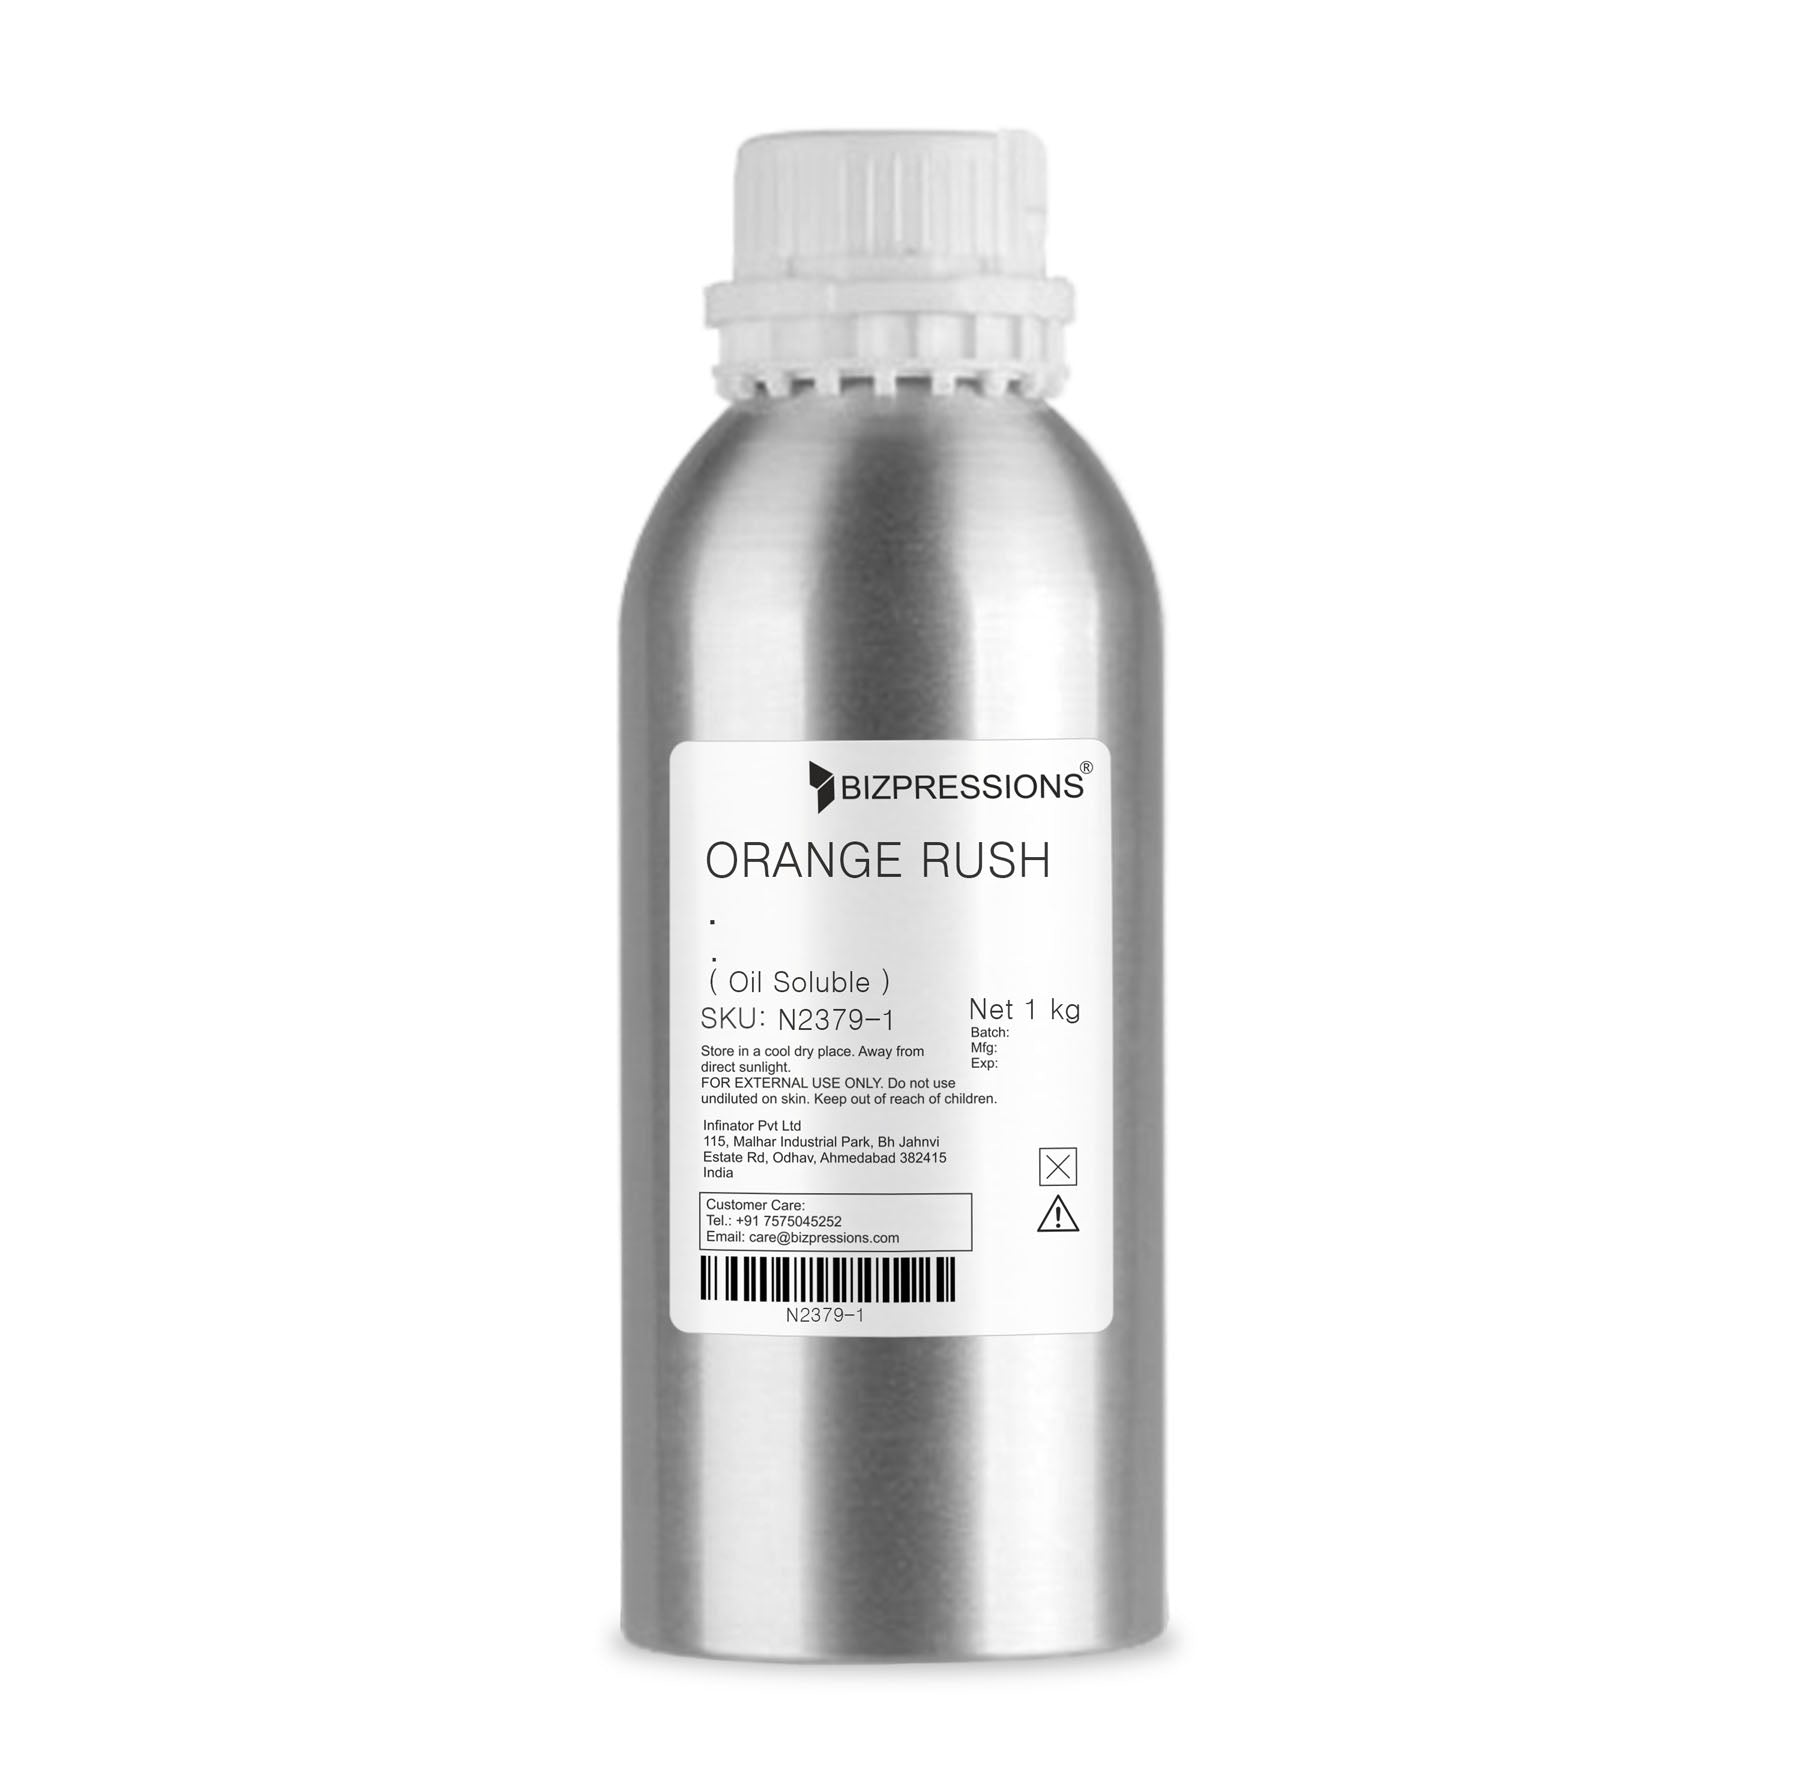 ORANGE RUSH - Fragrance ( Oil Soluble ) - 1 kg